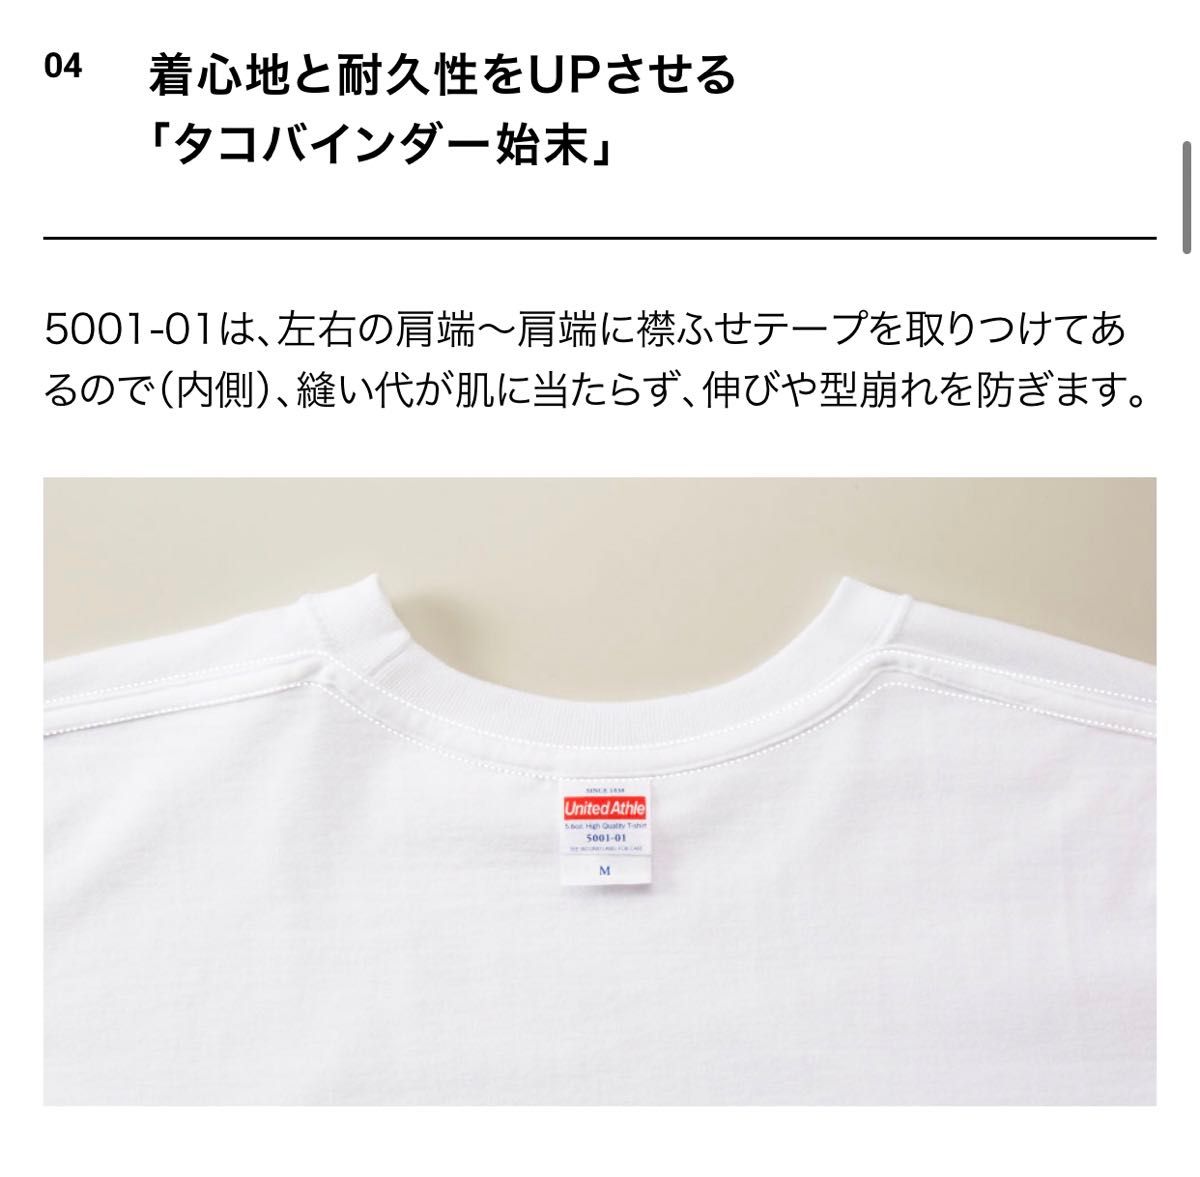 Tシャツ 半袖 5.6オンス ハイクオリティー【5001-01】L ヘイジーレッド 綿100%